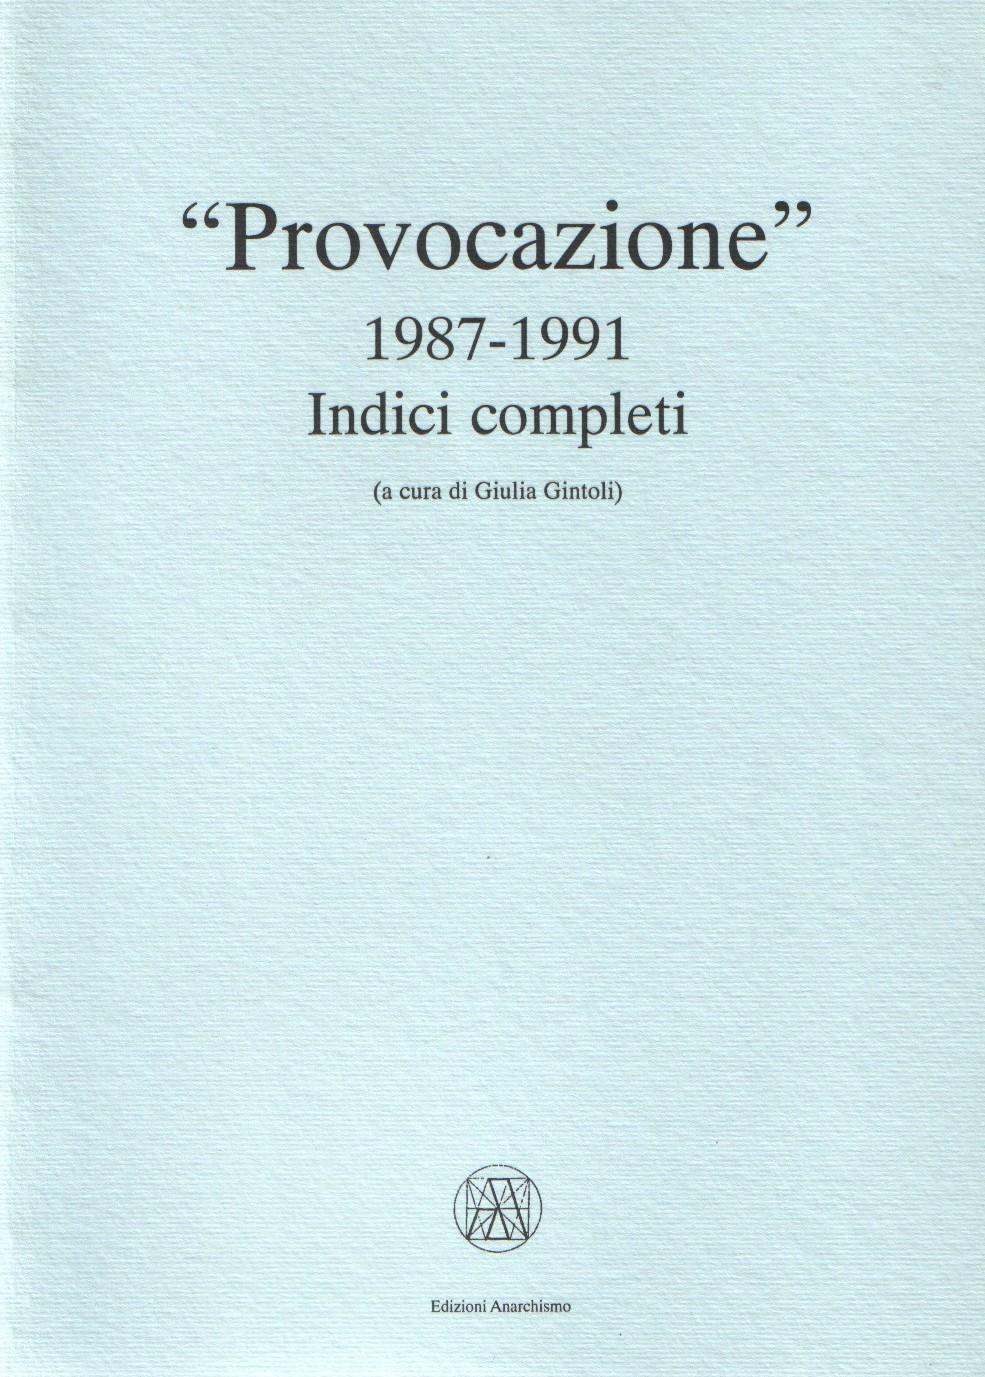 p-i-provocazione-indici-completi-1987-1991-x-cover.jpg